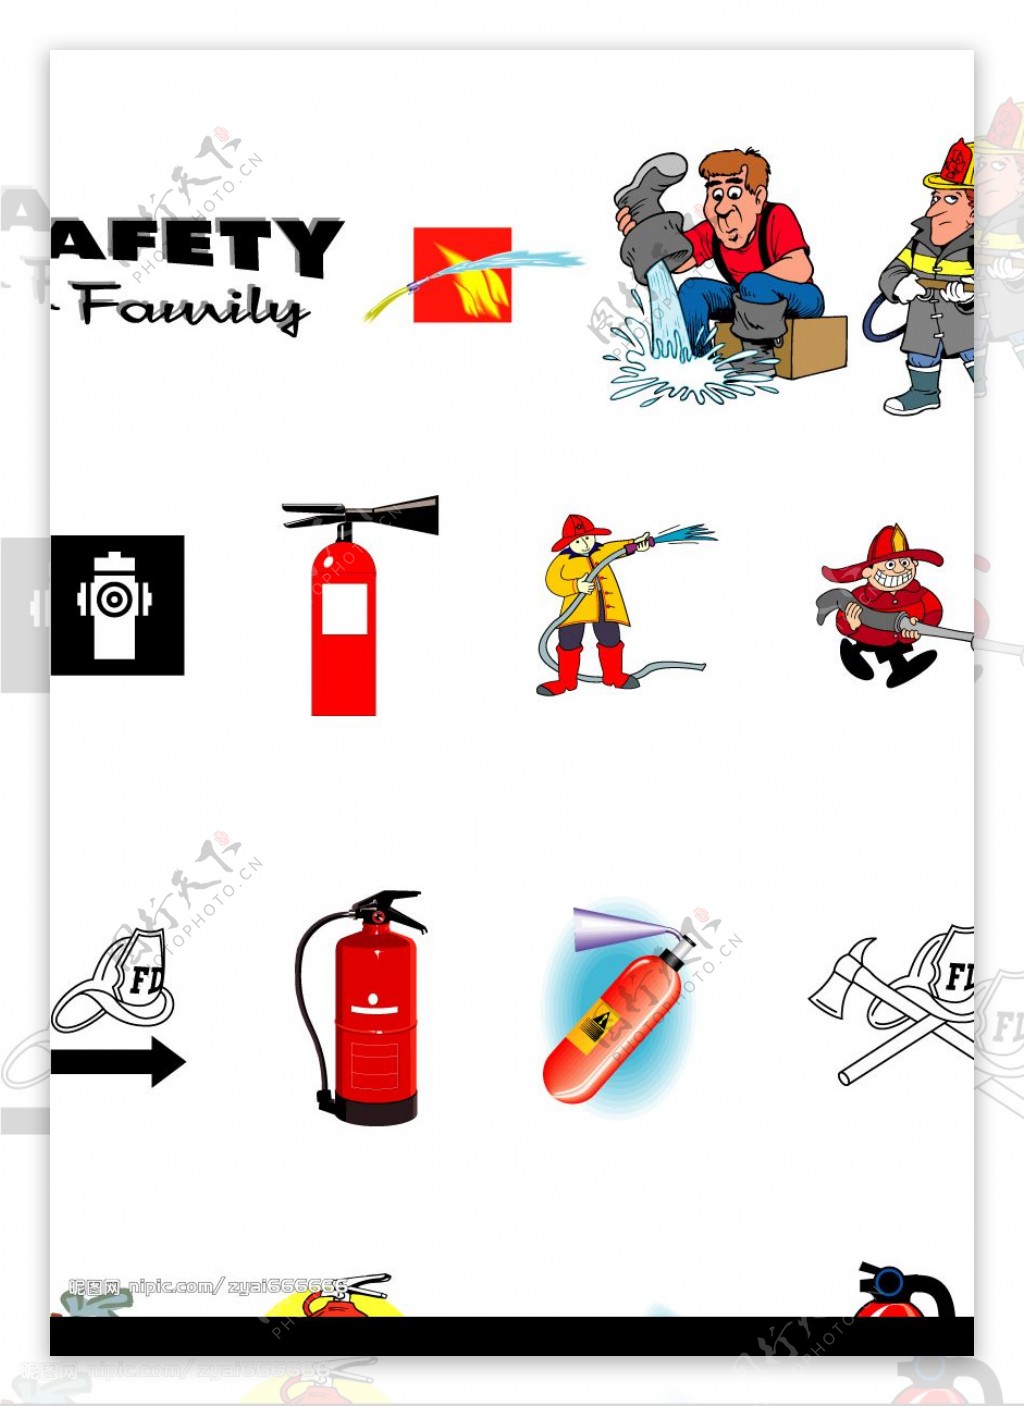 消防消防设施与器材等图片